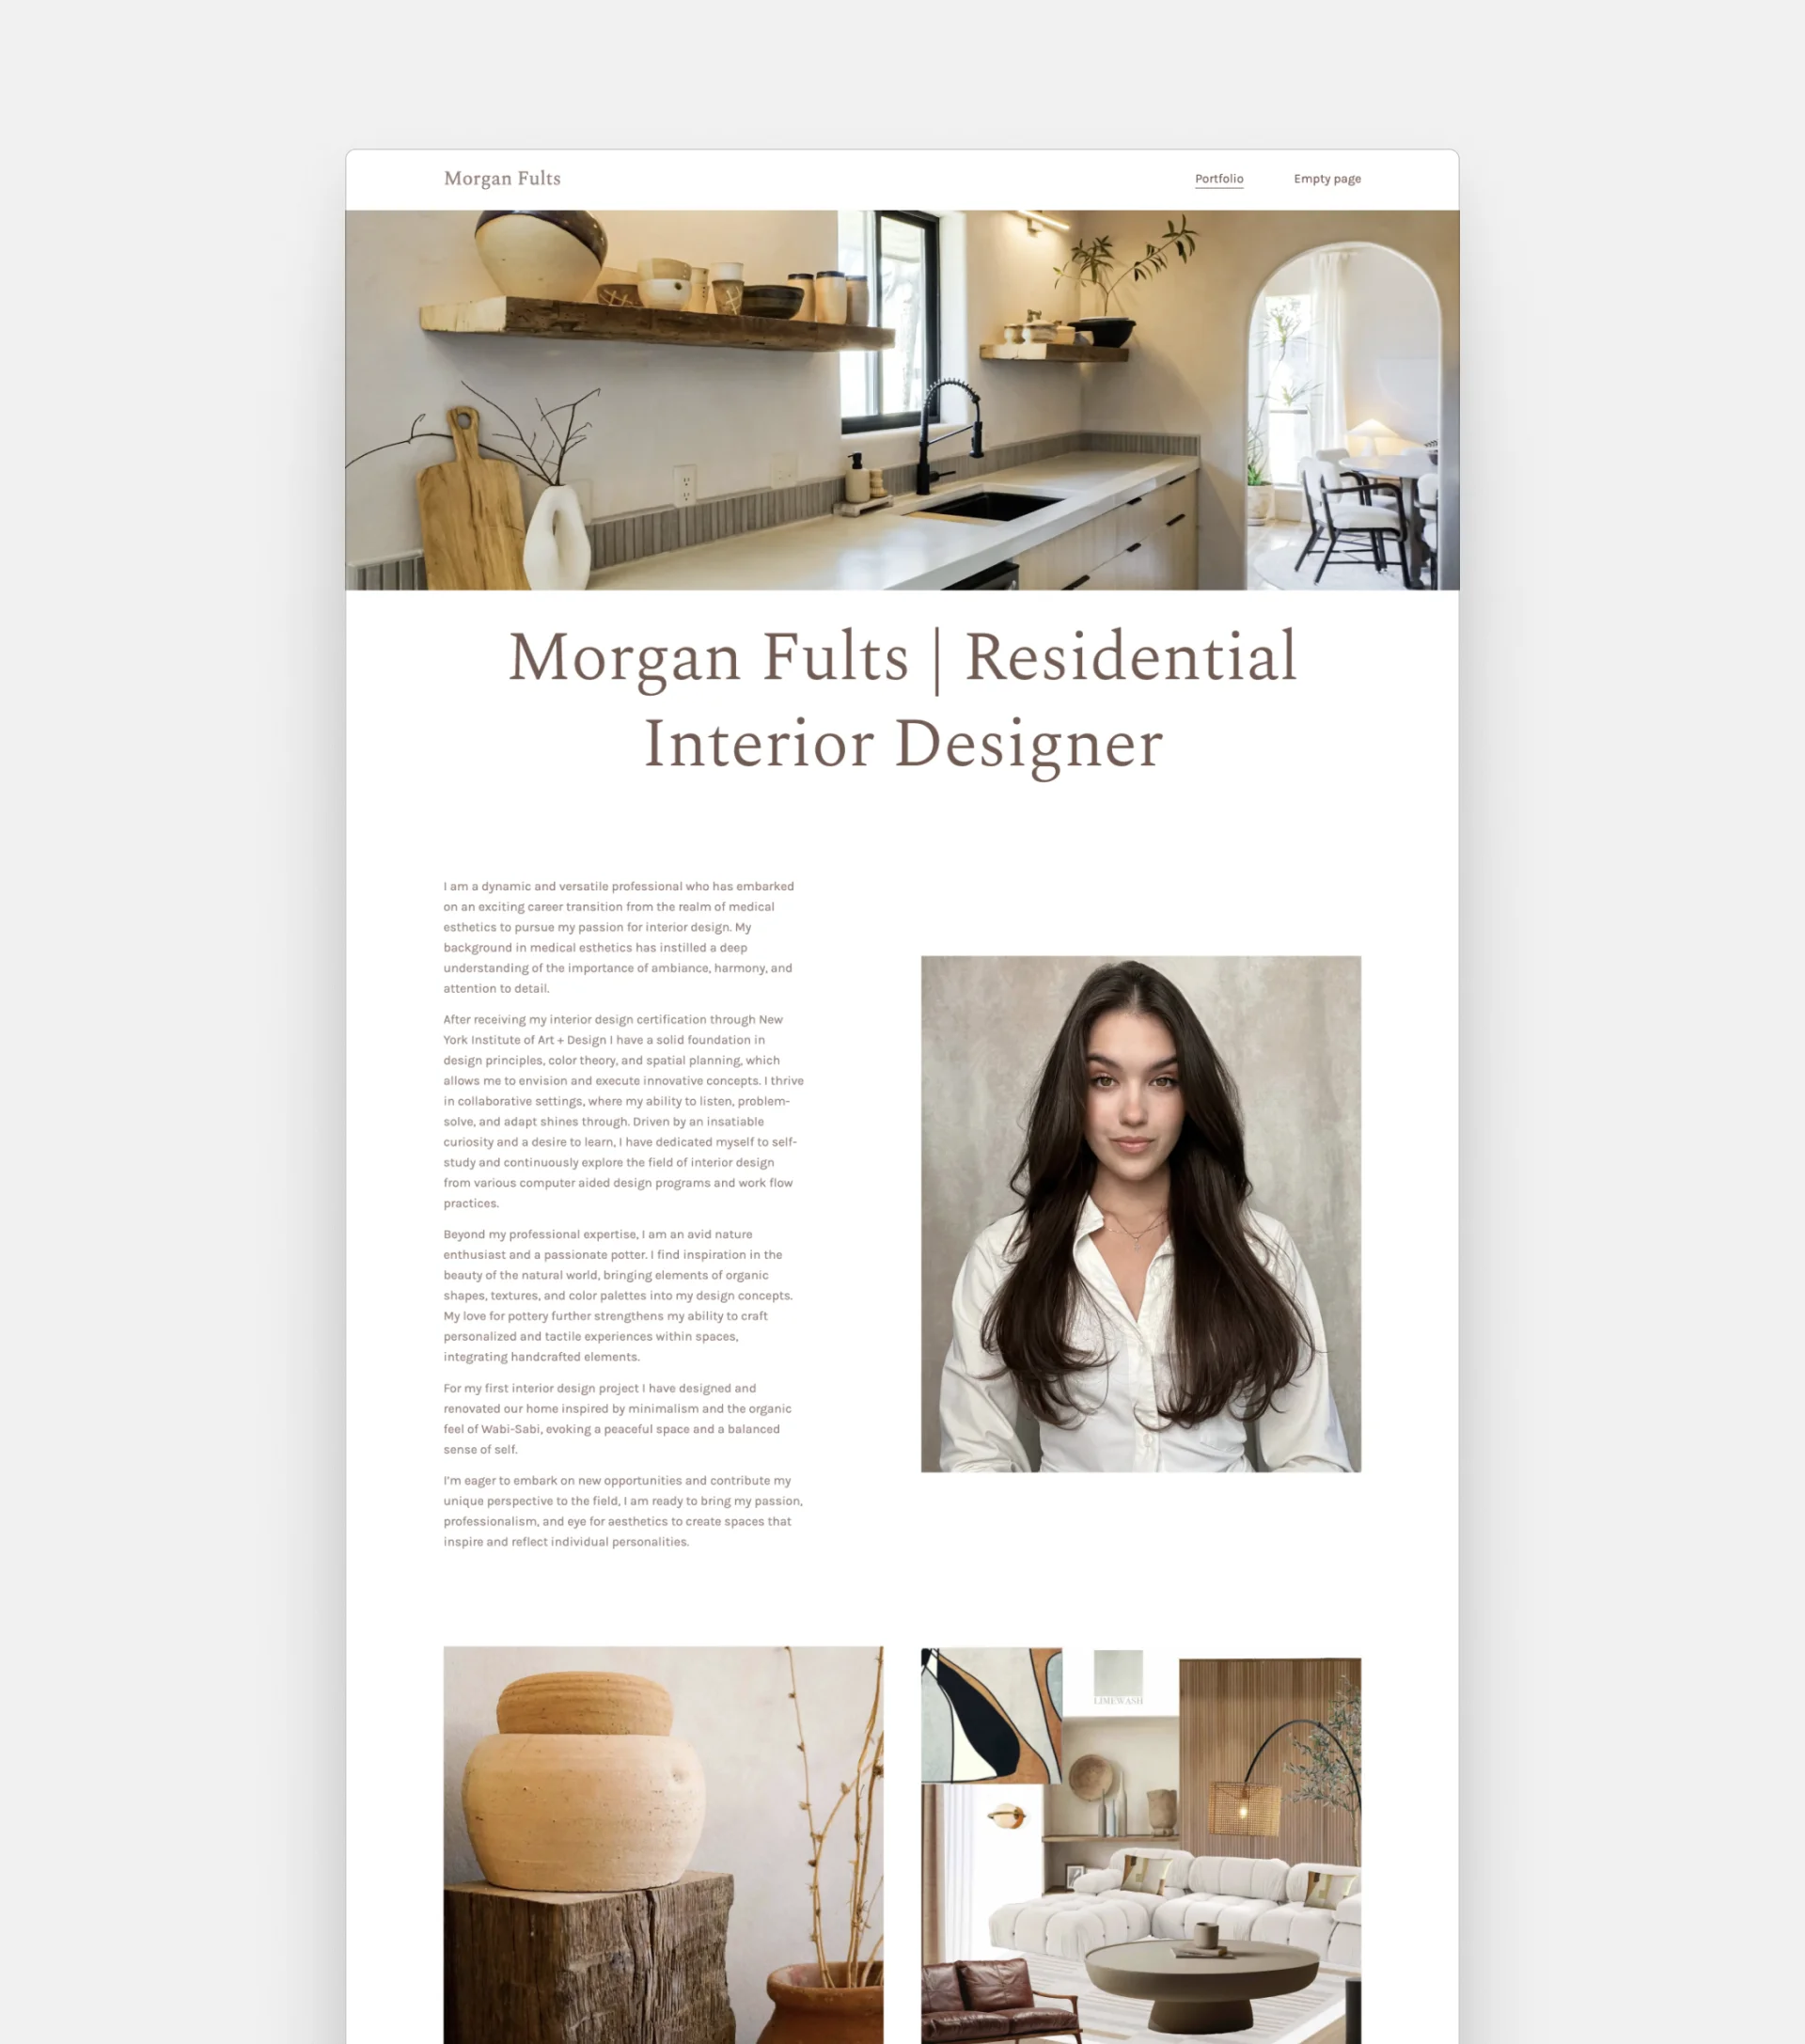 interior design portfolio layout examples